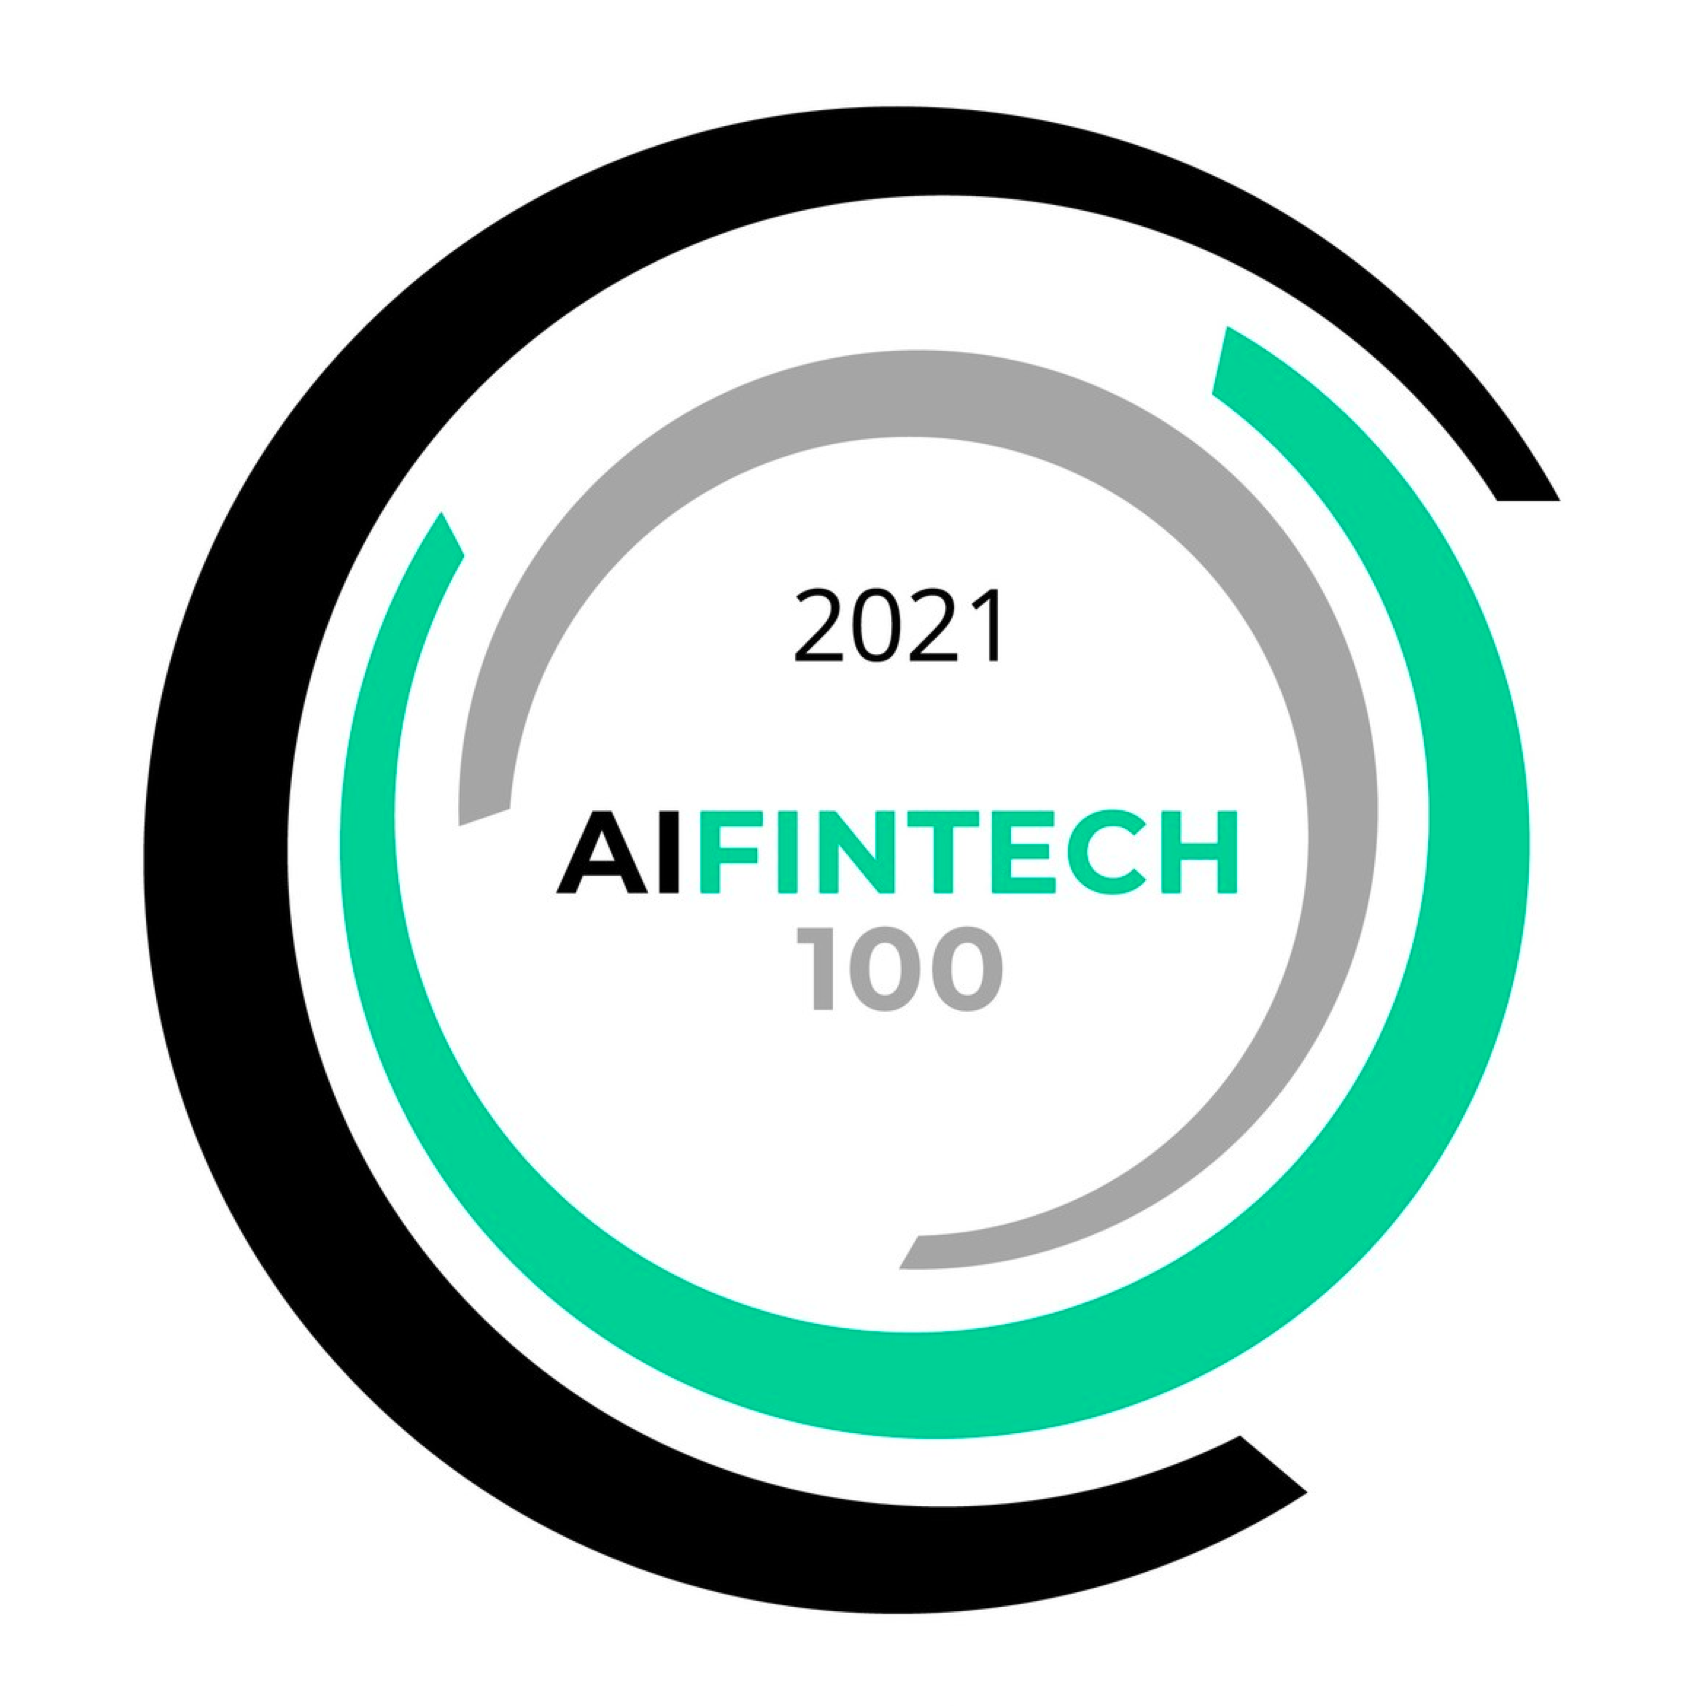 AI Fintech 100